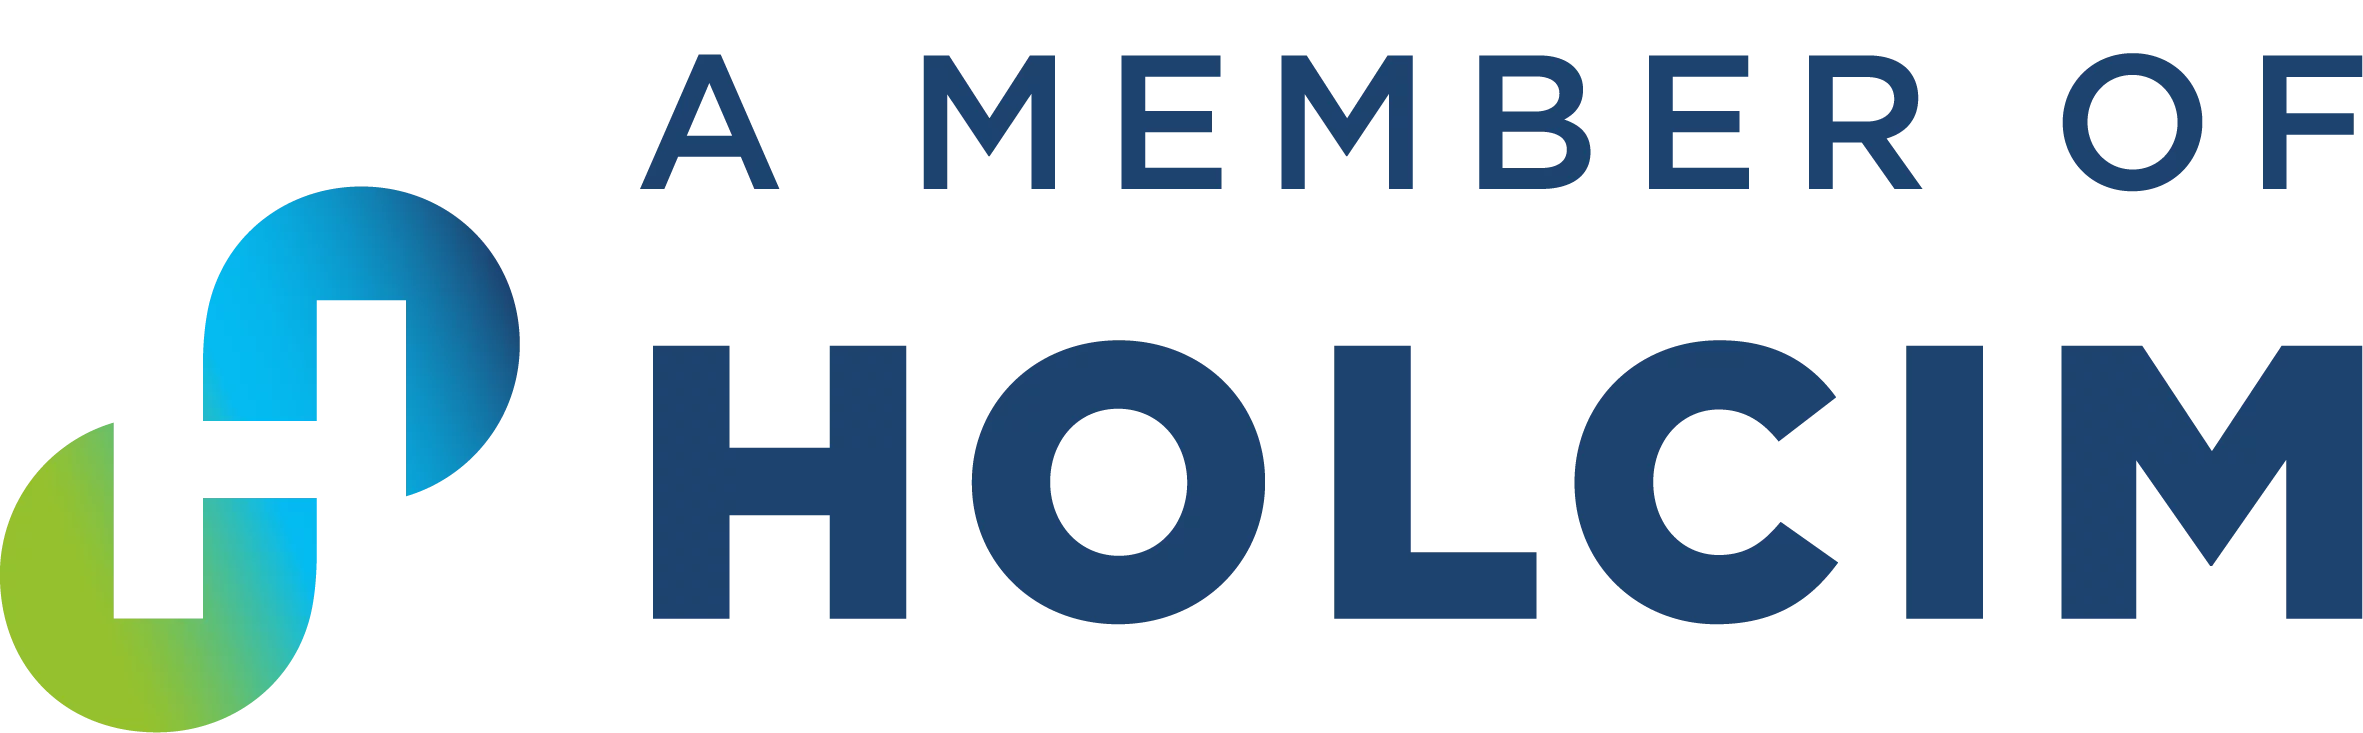 Grupa Holcim logo